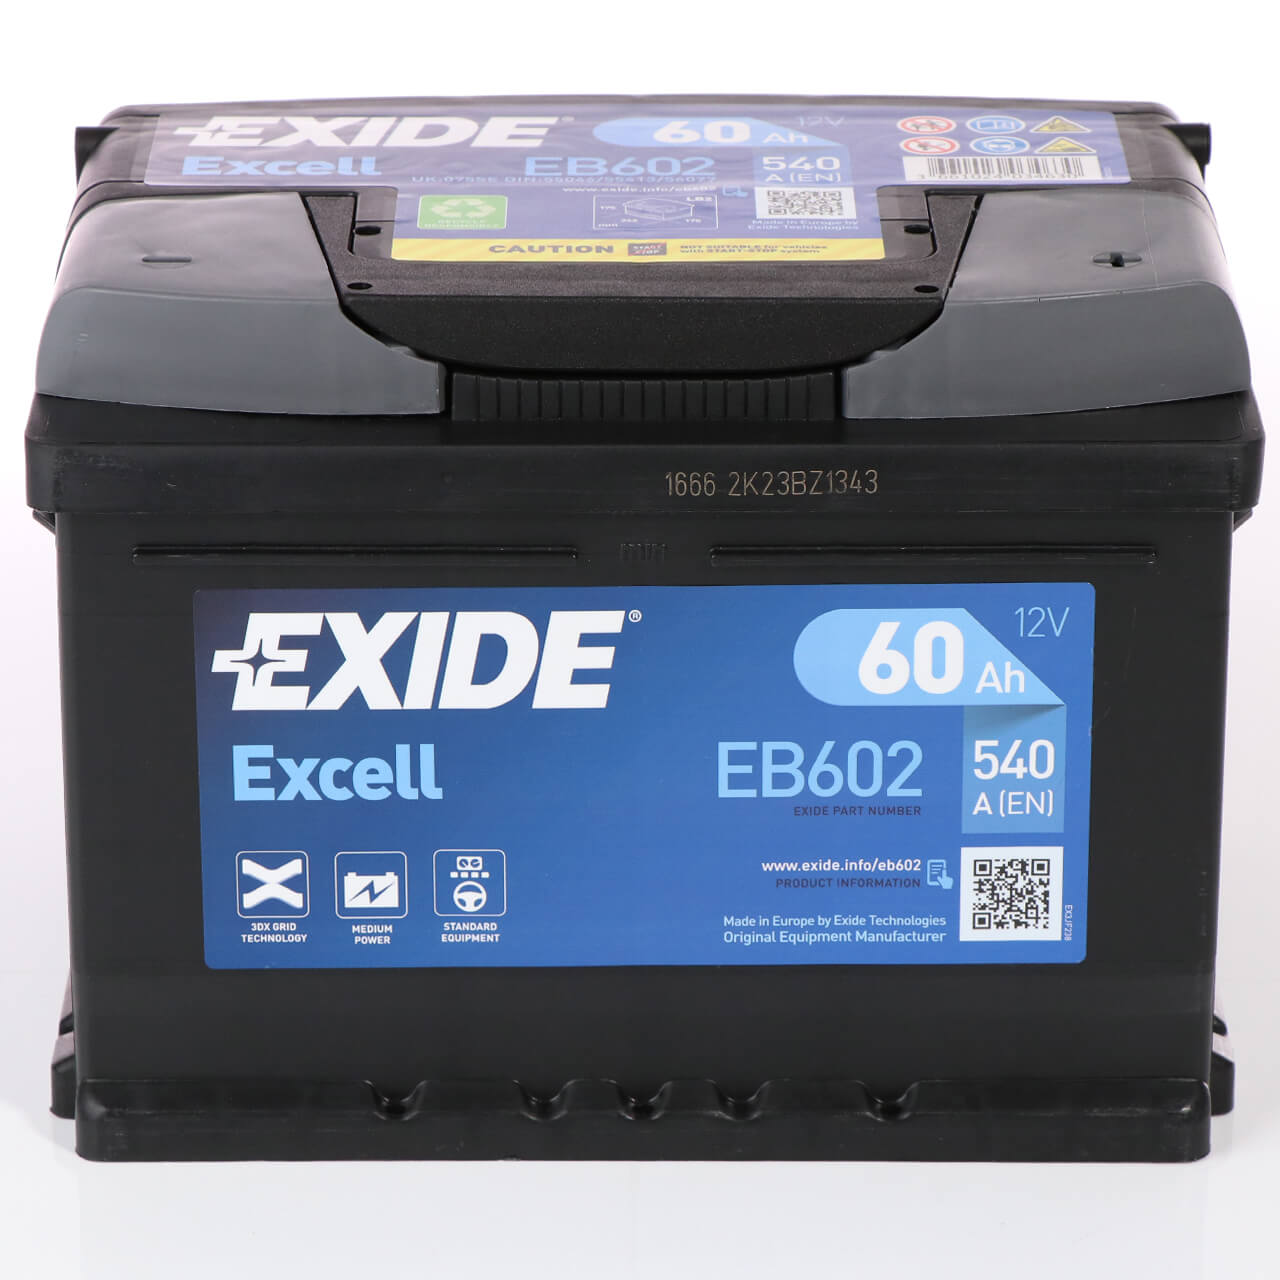 Batería de Coche/Vehículo Exide Excell EB605. 12V - 60Ah 60/480A (Caja D23)  - Baterías Por Un Tubo